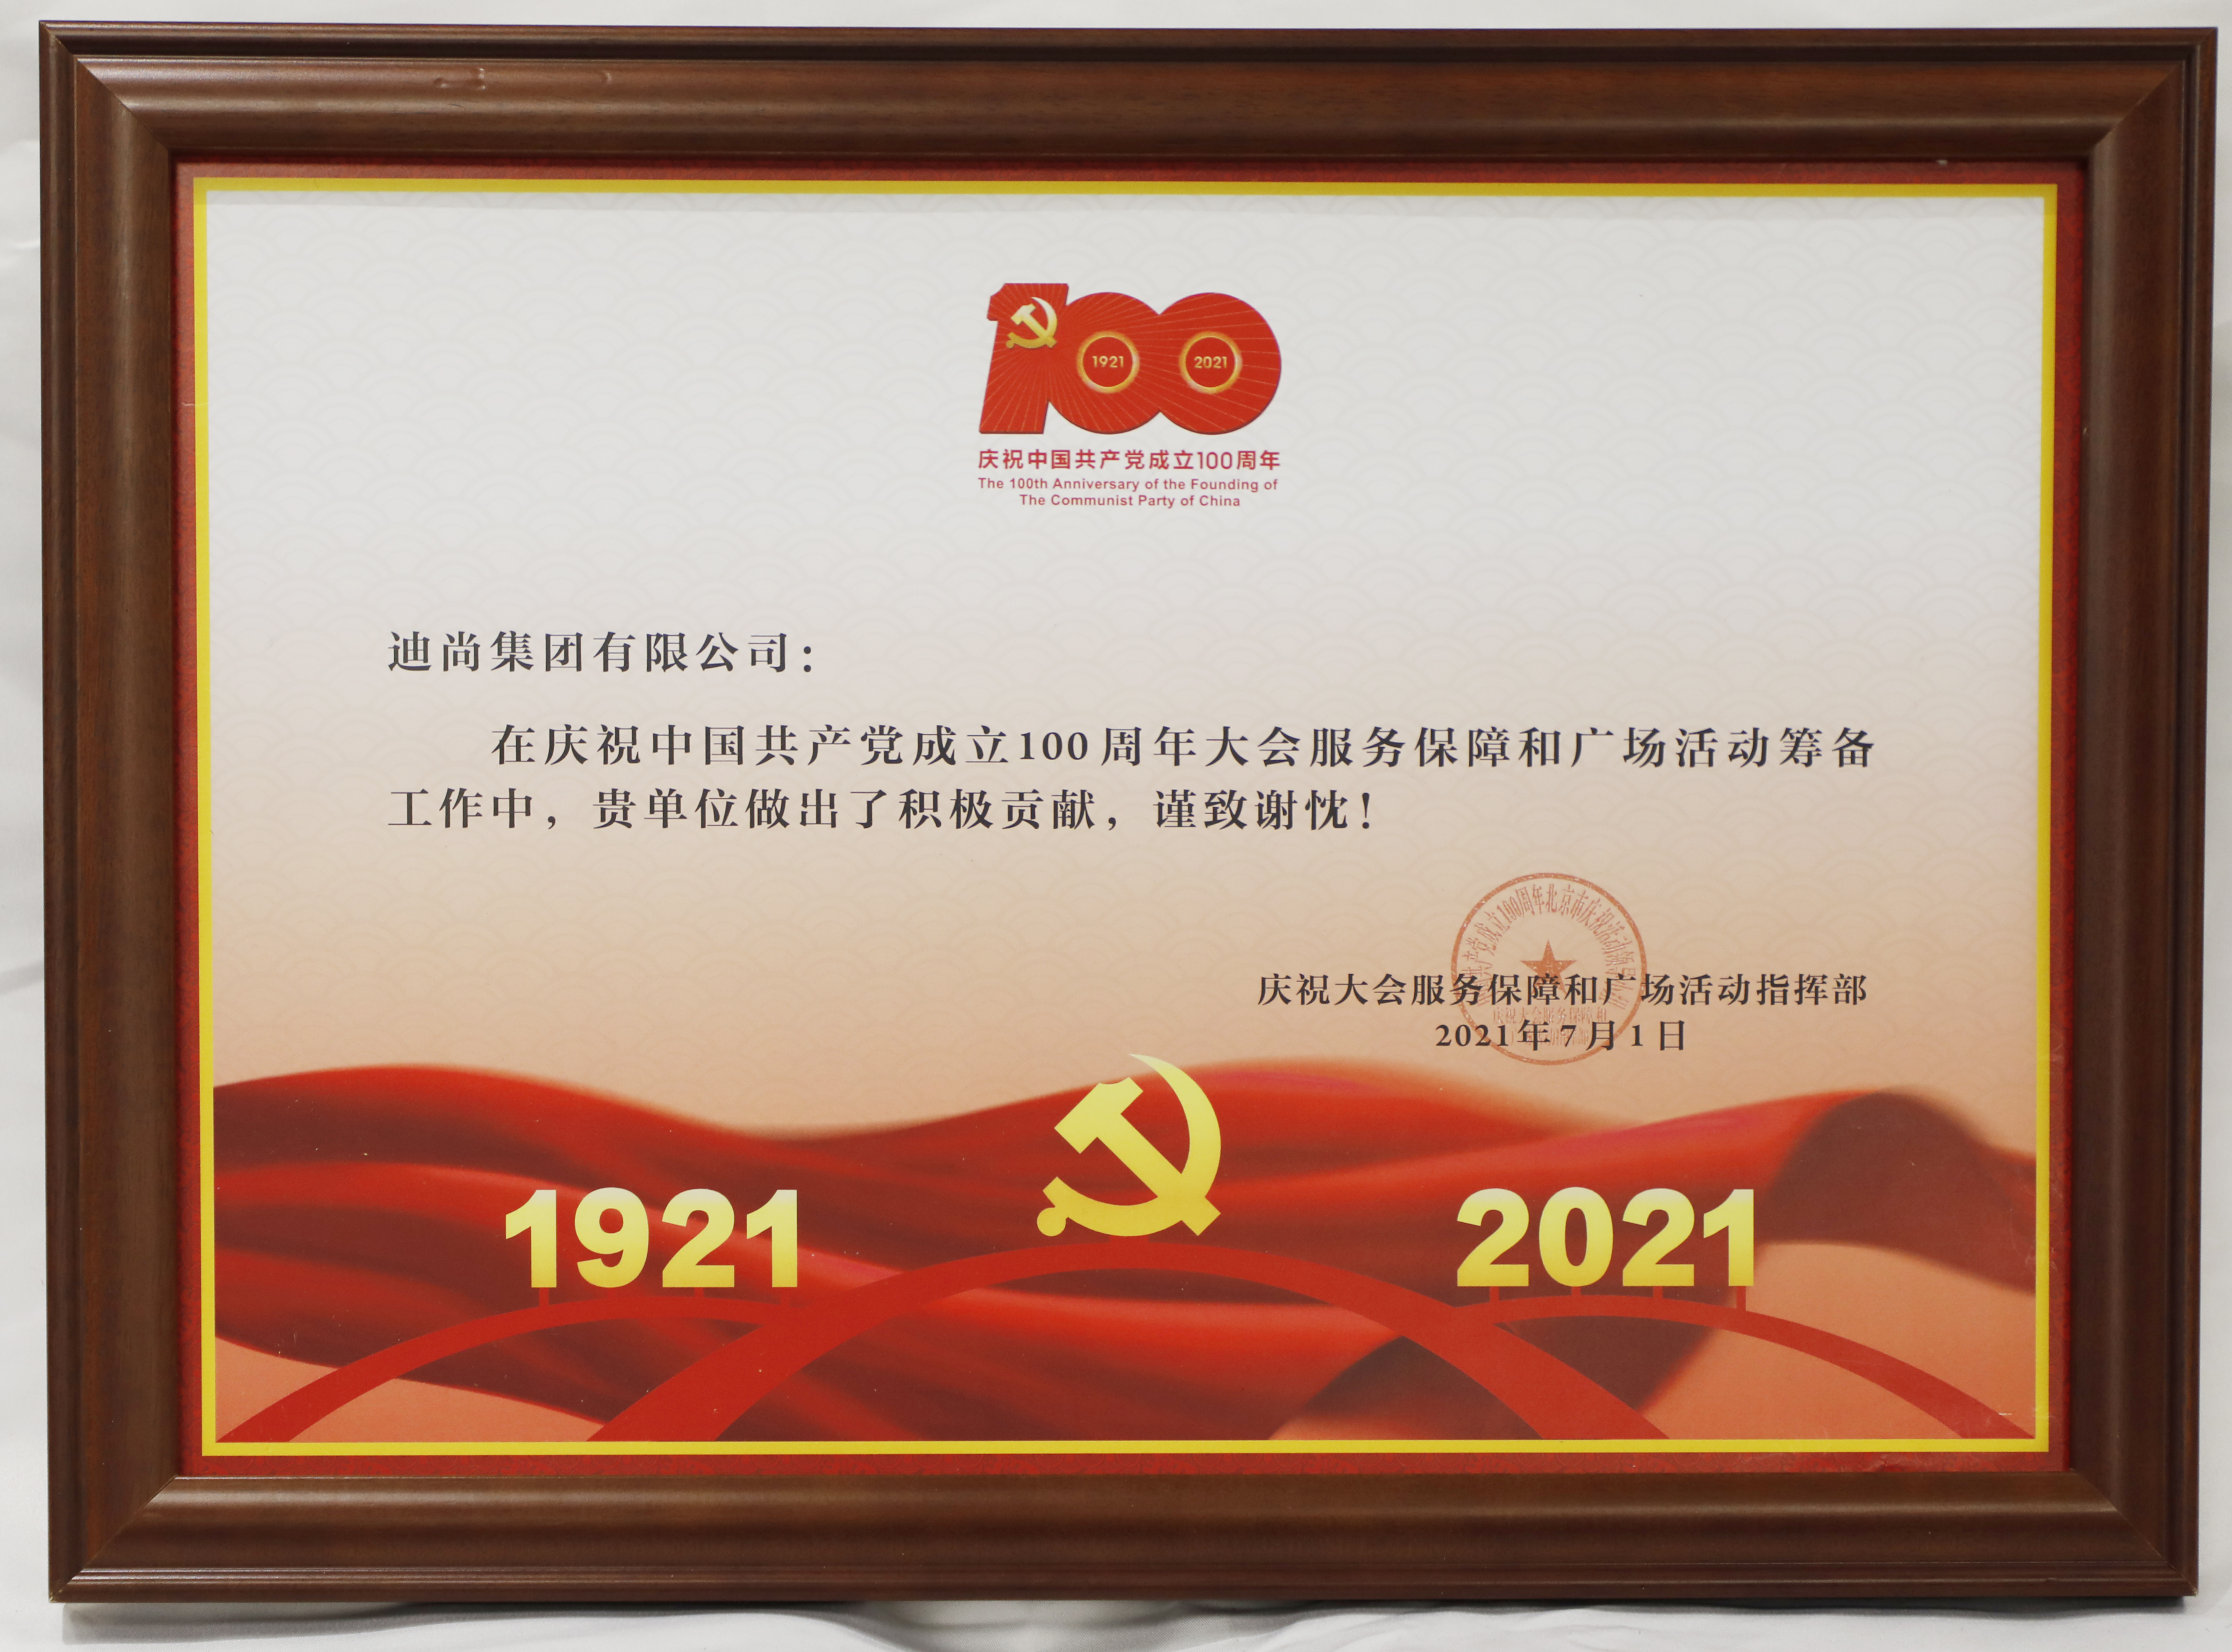 20210701-迪尚集團-慶祝中國共產黨成立100周年大會服務保障和廣場活動籌備工作-感謝信-慶祝大會服務保障和廣場活動指揮部.JPG